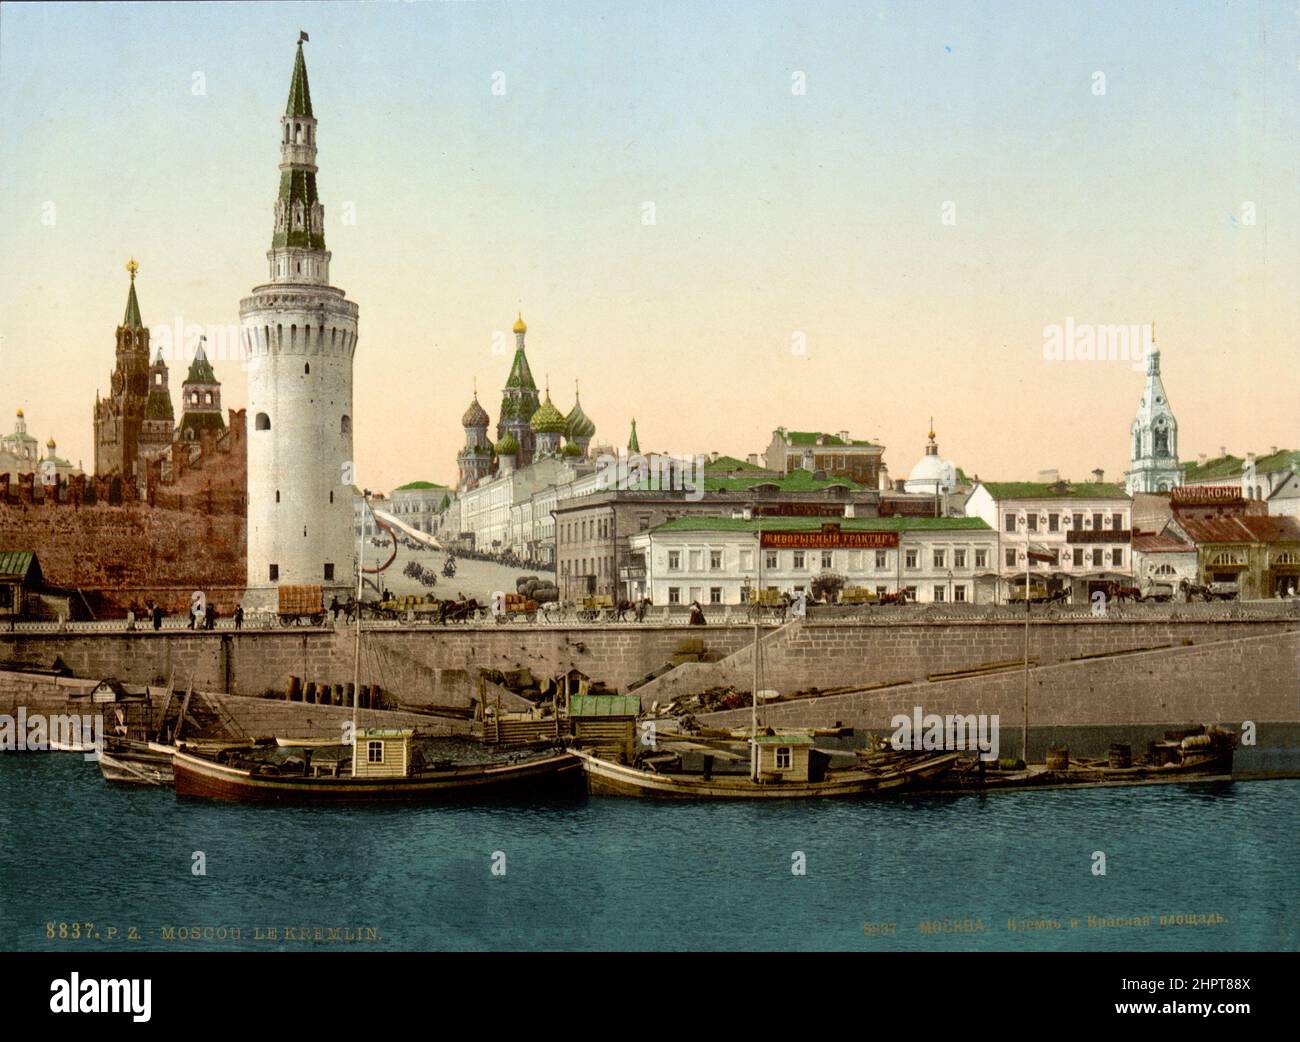 Foto del 19th° secolo del Cremlino di Mosca con la Torre di Spasskaya (sfondo), la Torre di Vodovzvodnaya in primo piano e la Cattedrale di San Basilio. Impero russo. Foto Stock